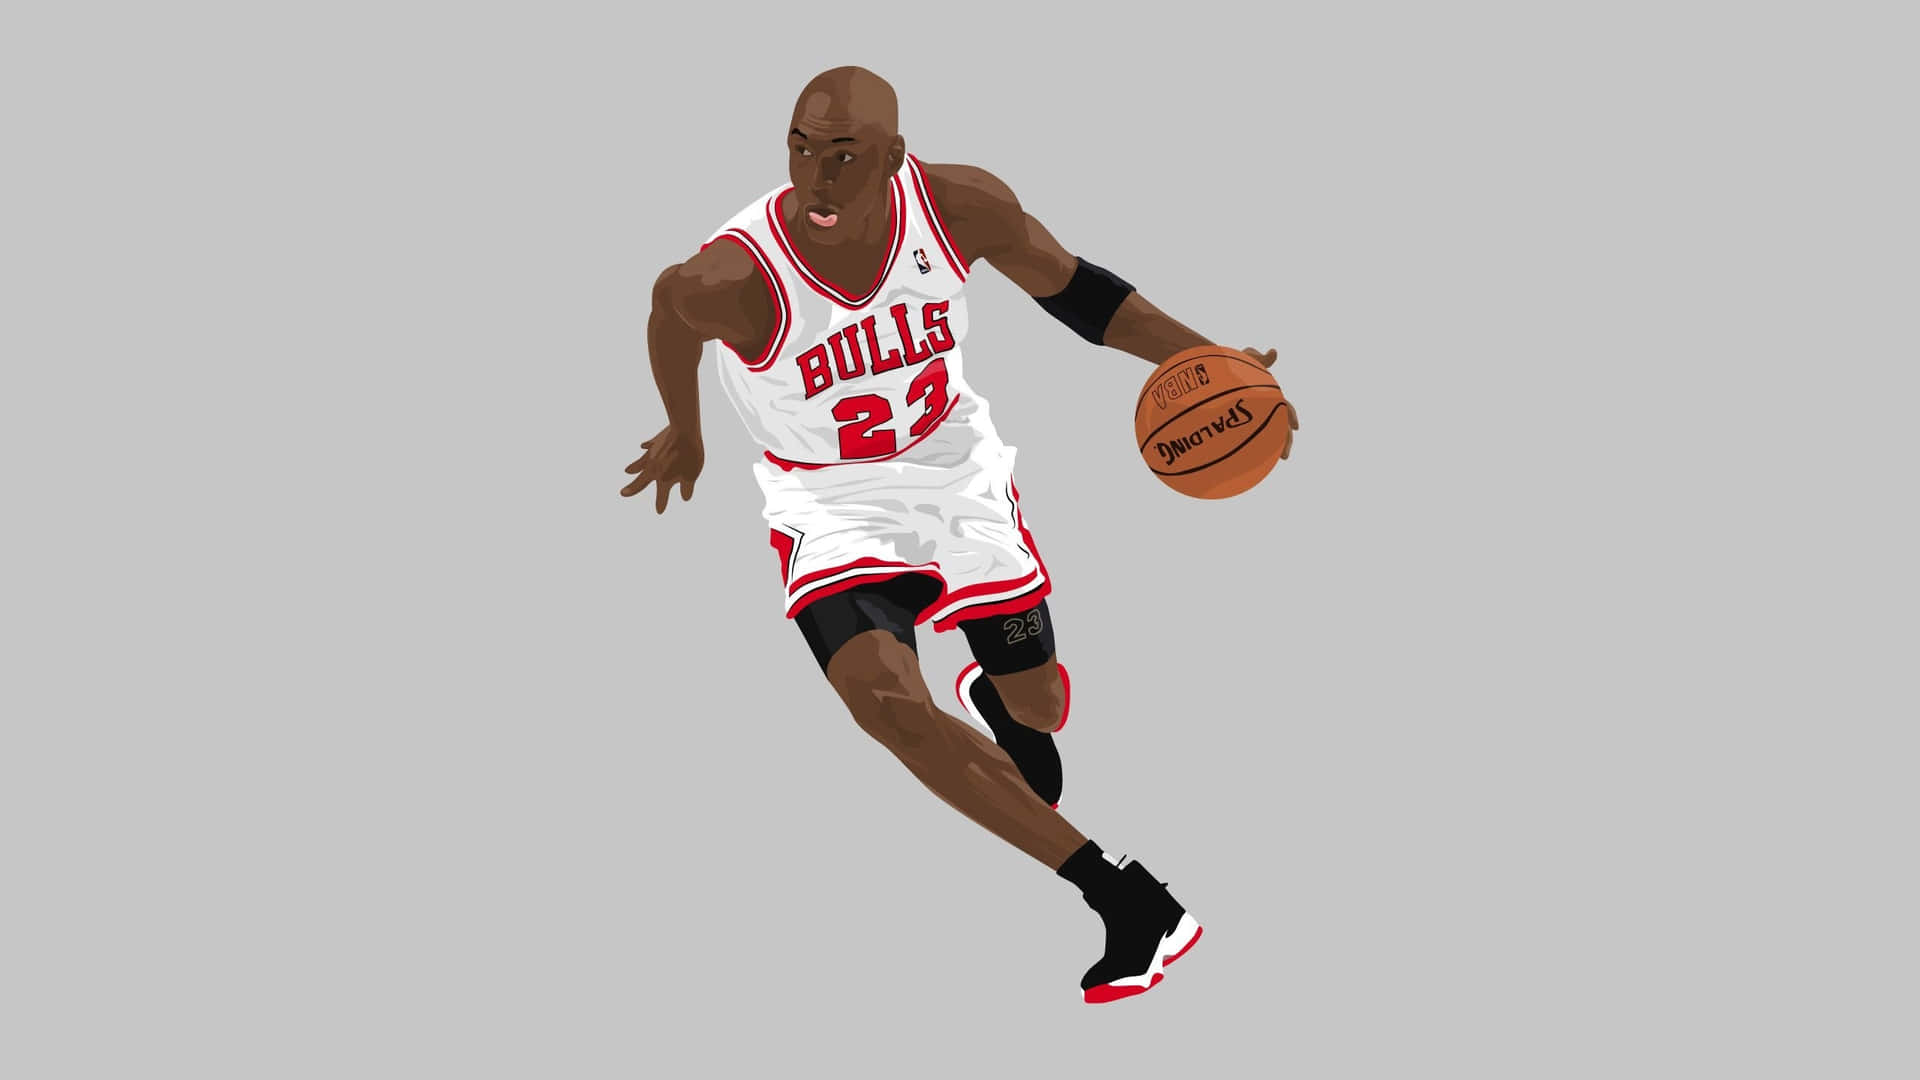 Wallpaper ID 149257  digital art Michael Jordan Chicago Bulls  basketball free download